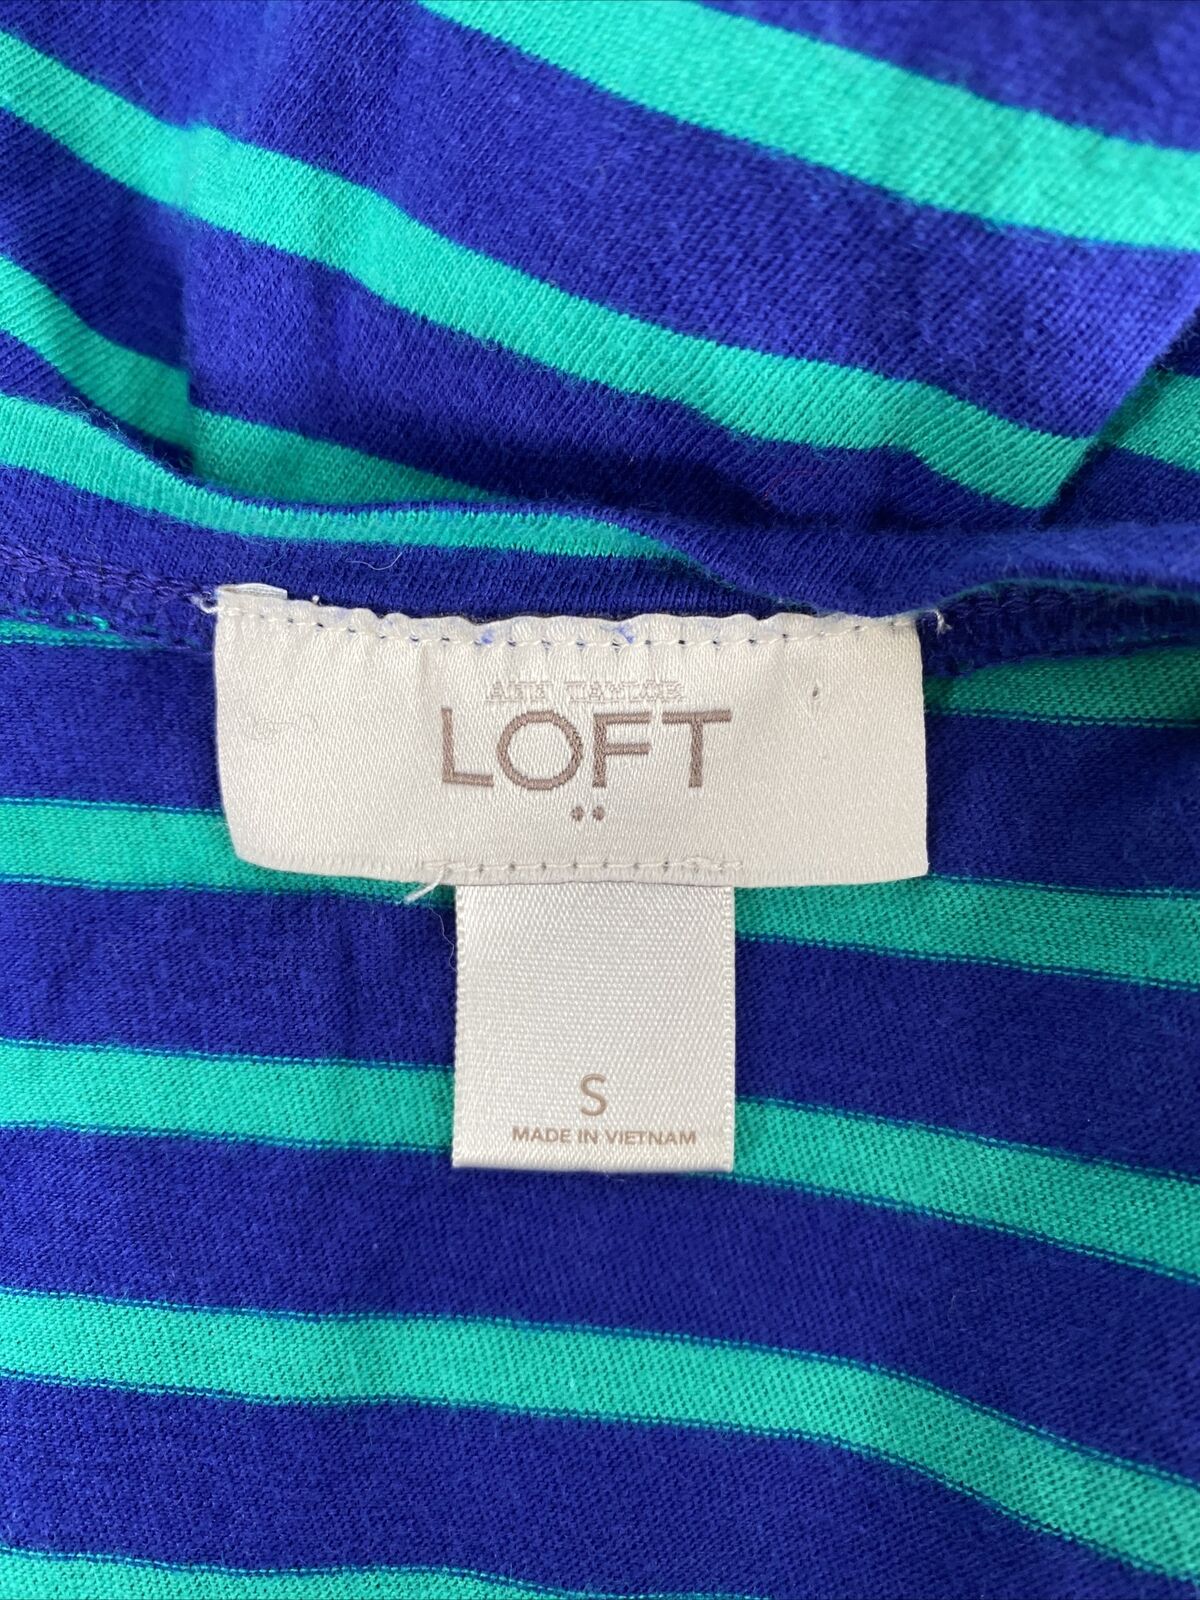 LOFT Women's Blue/Green Striped Long Sleeve T-Shirt - S